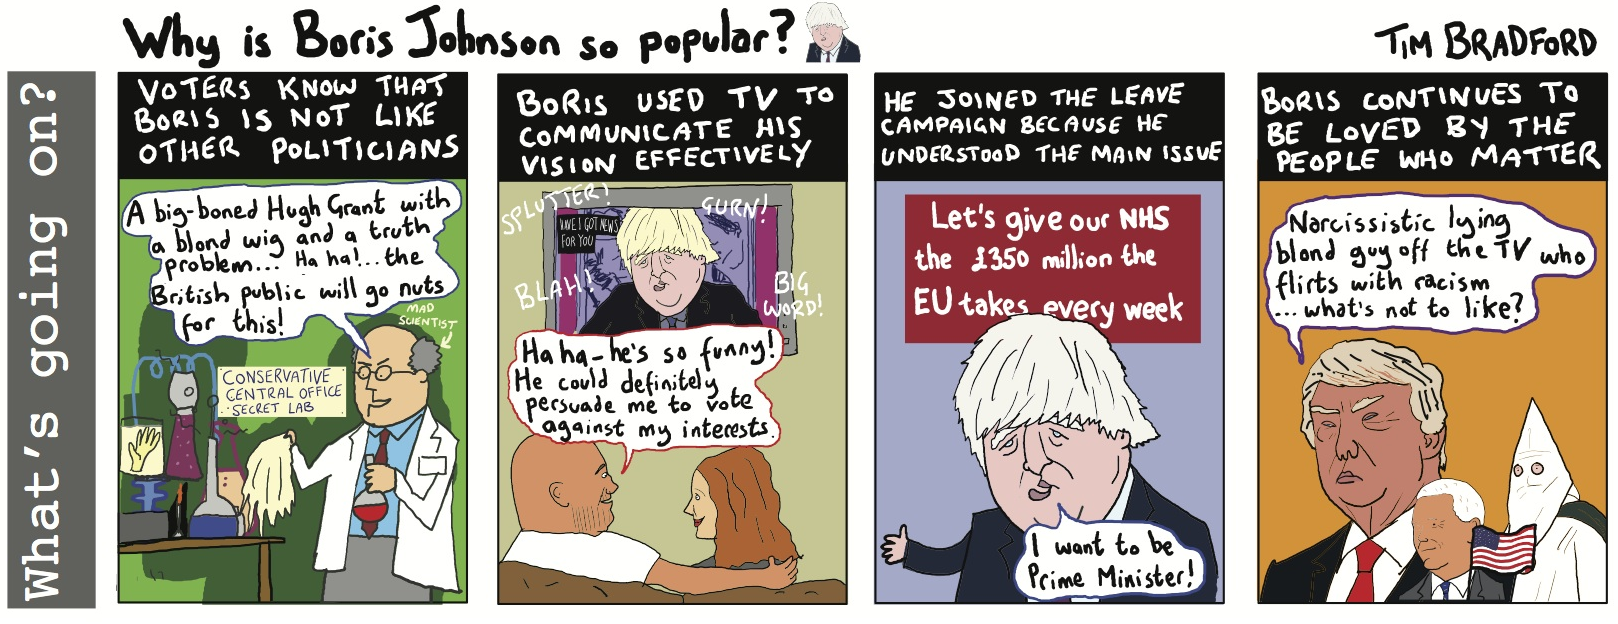 y is Boris Johnson so popular? - 09/12/16